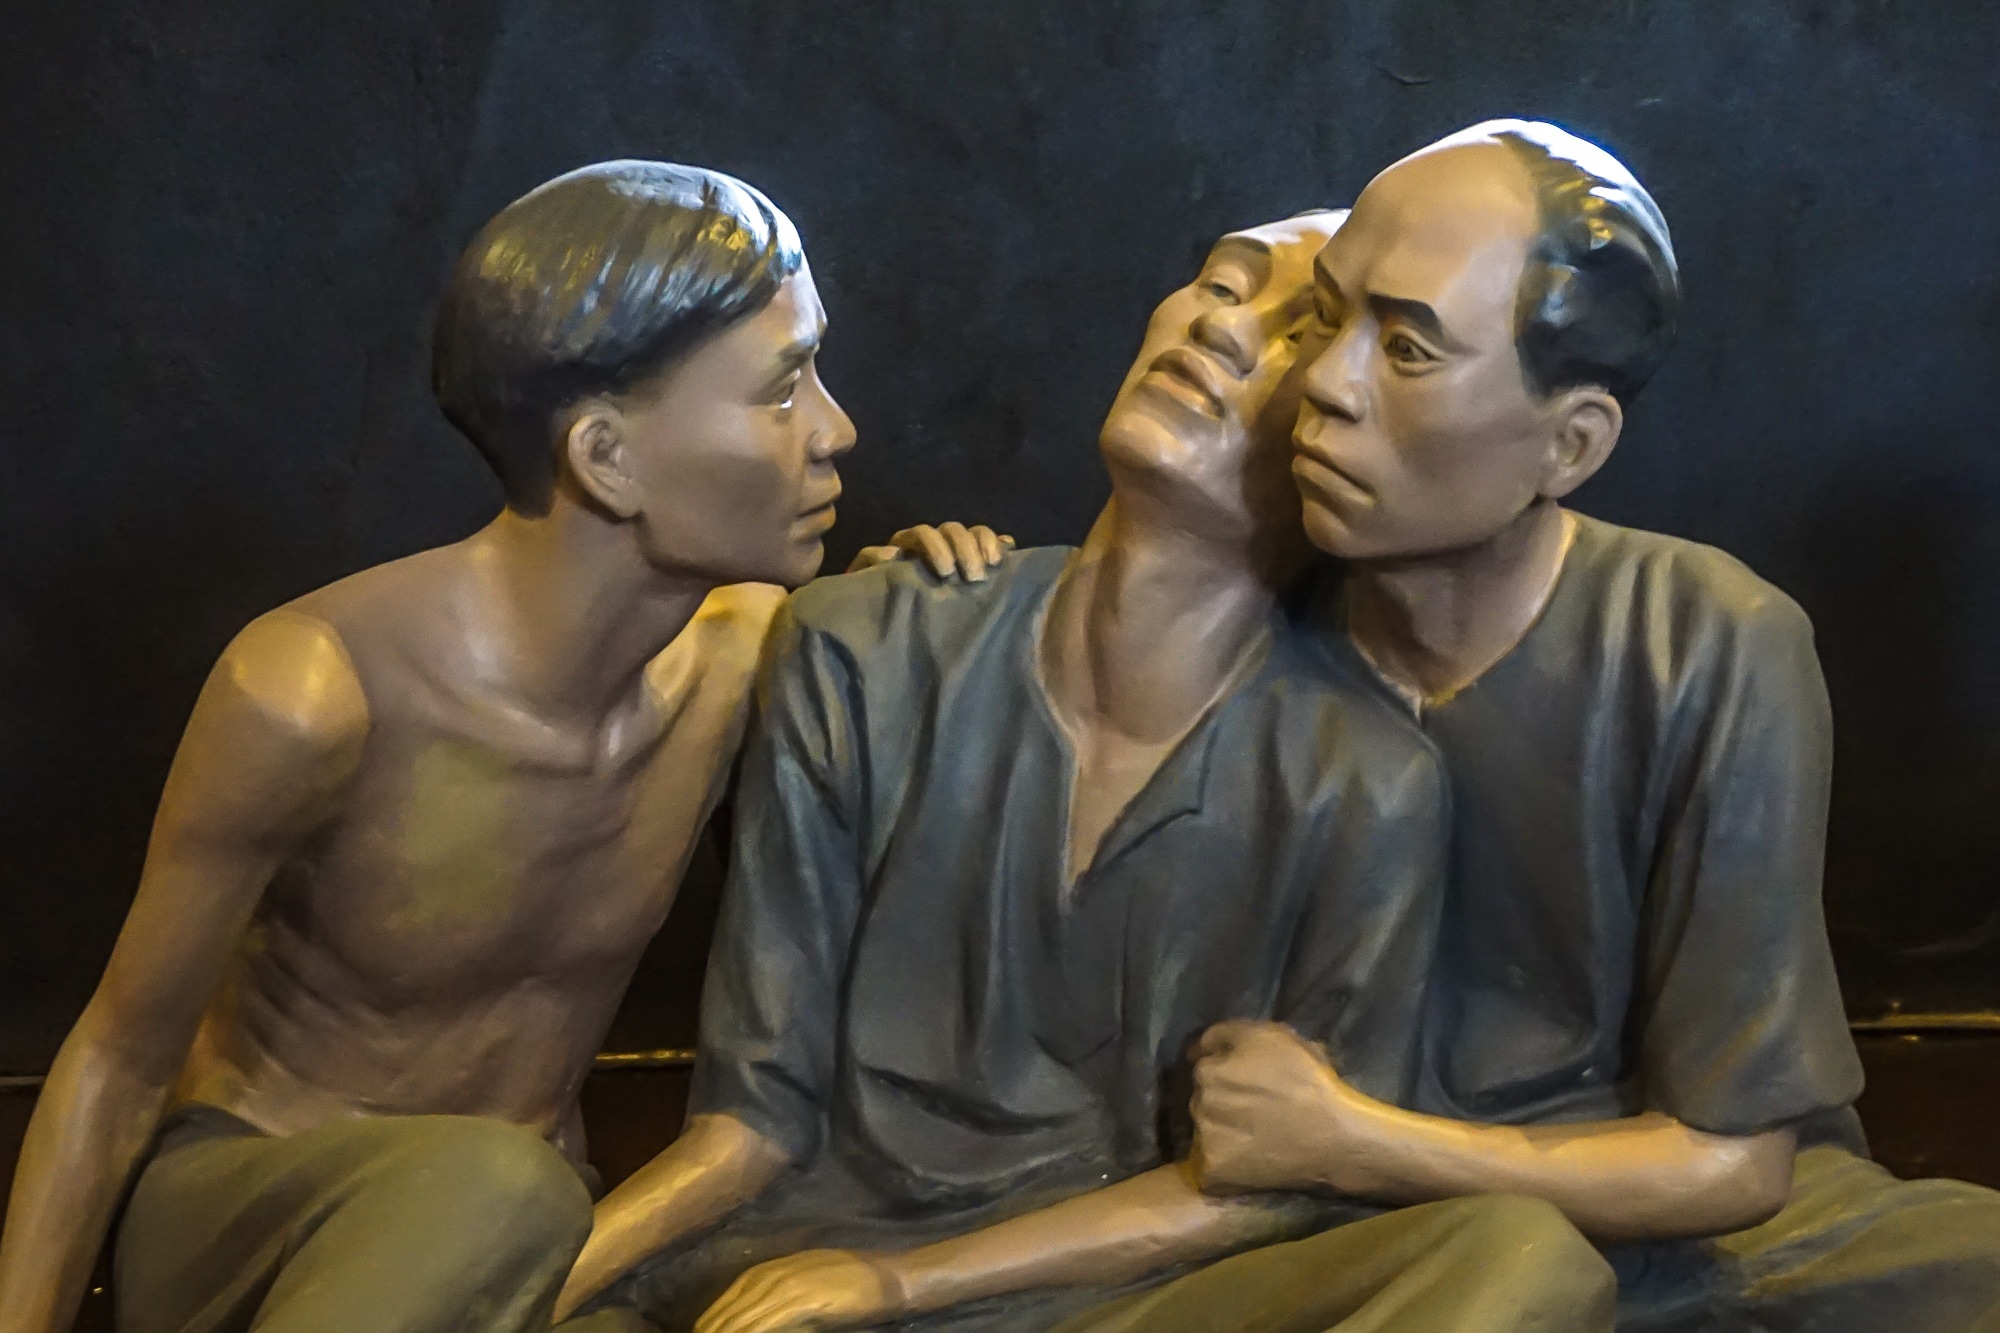 ceramic figurine of 3 men